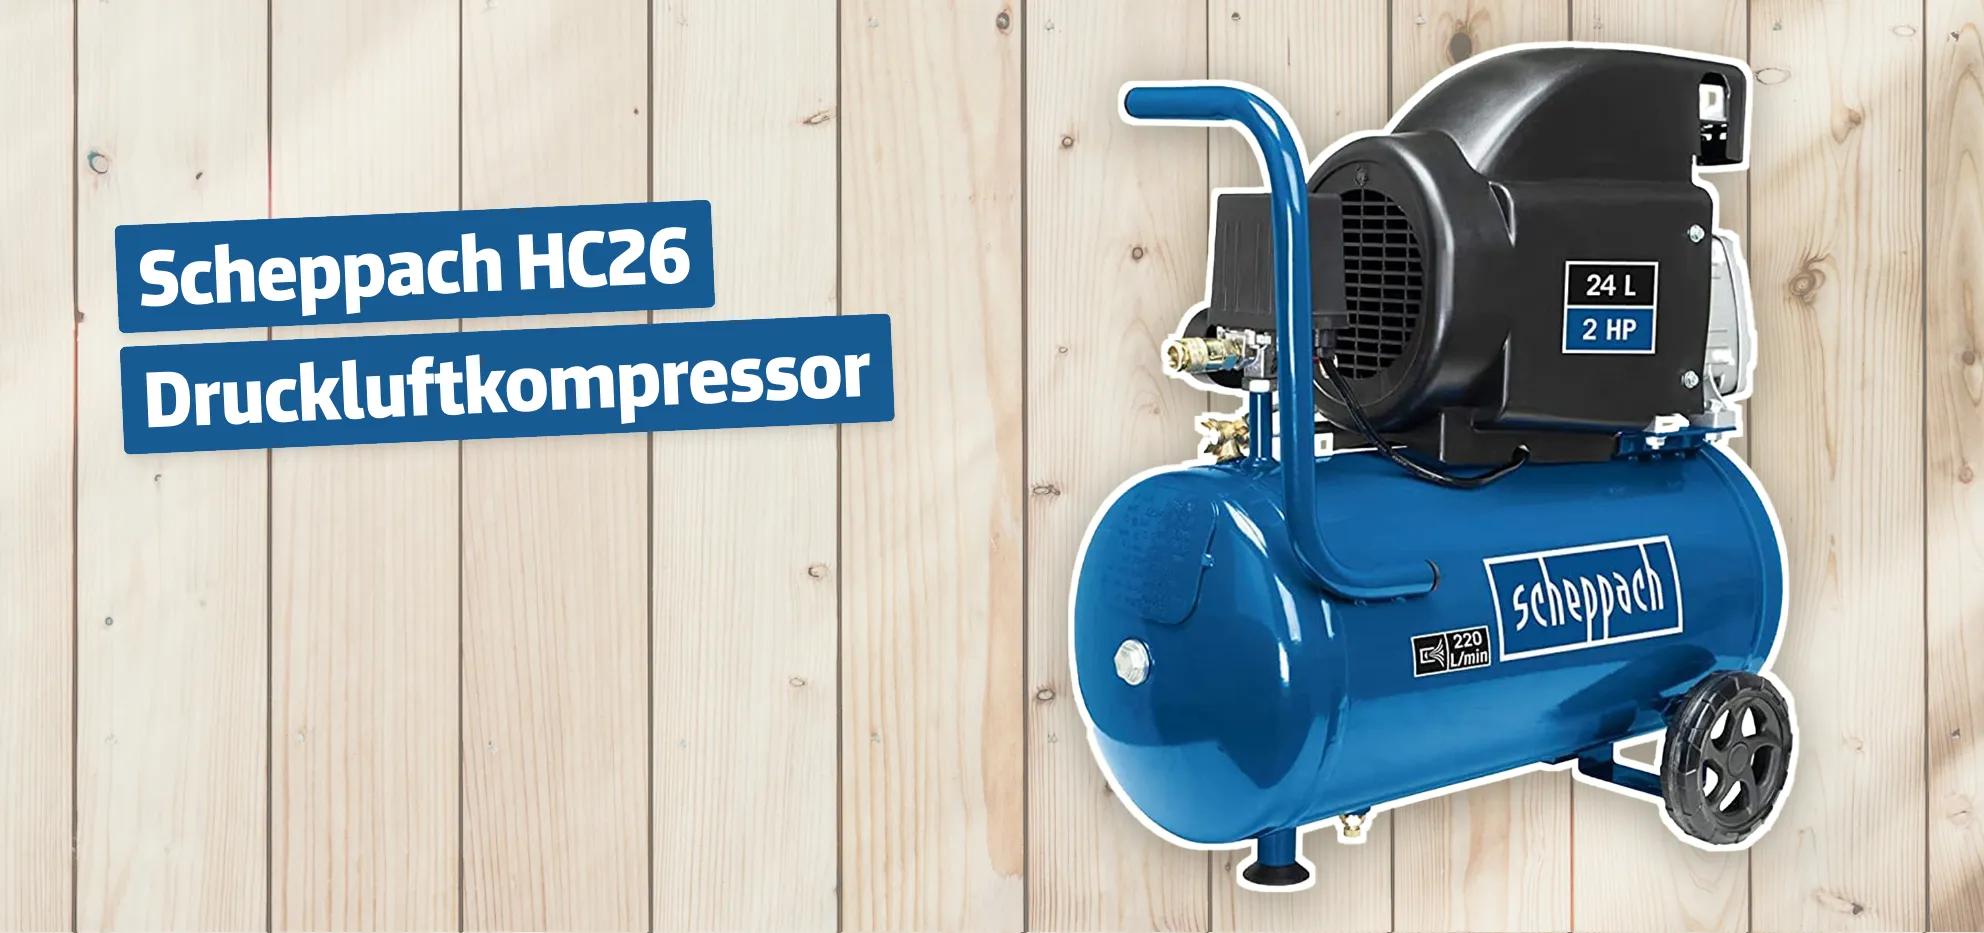 Scheppach HC26 Druckluftkompressor